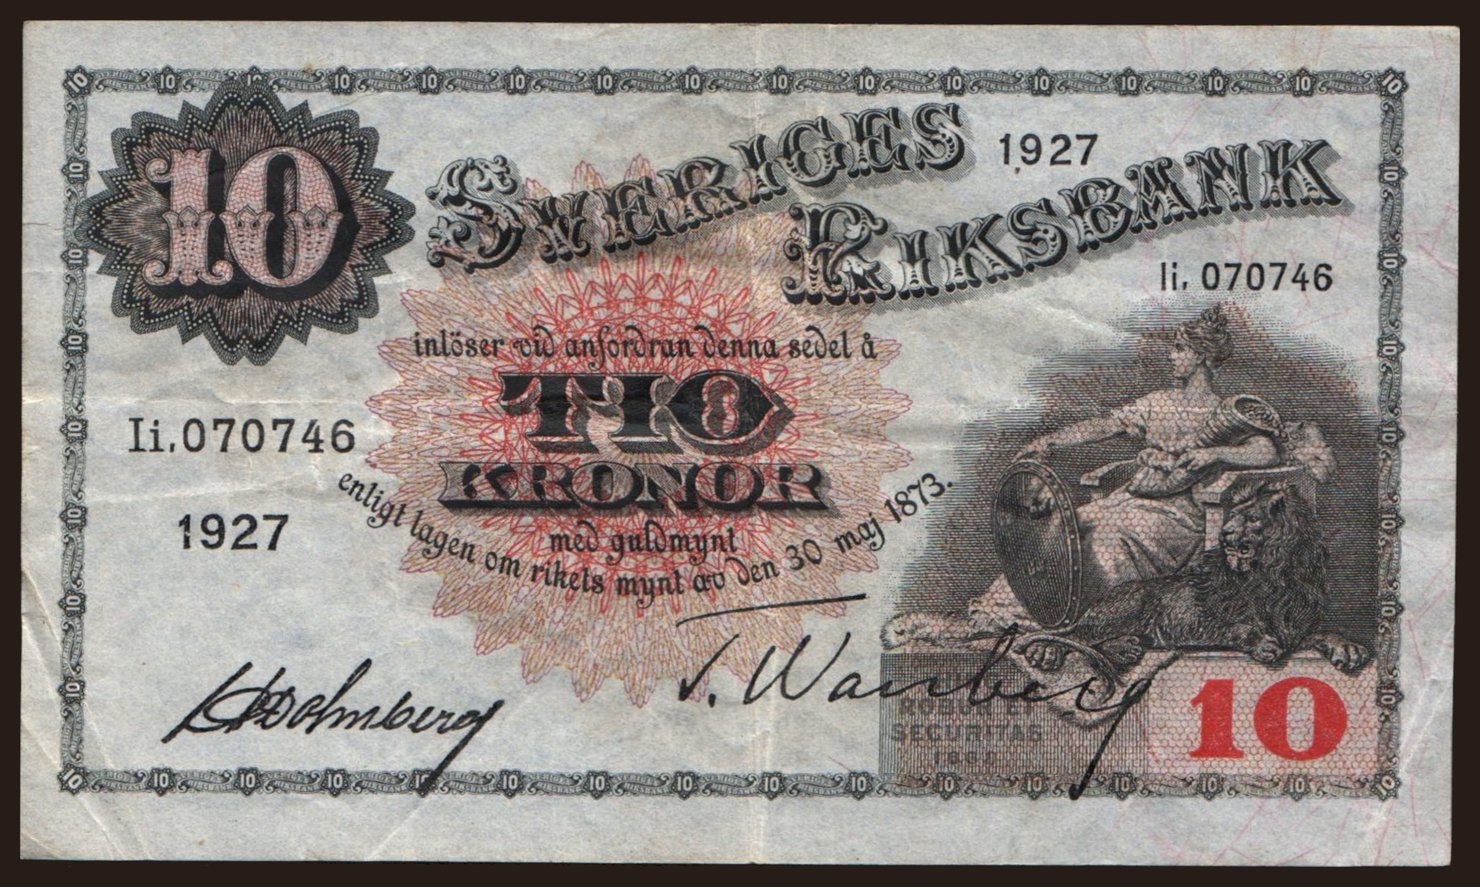 10 kronor, 1927